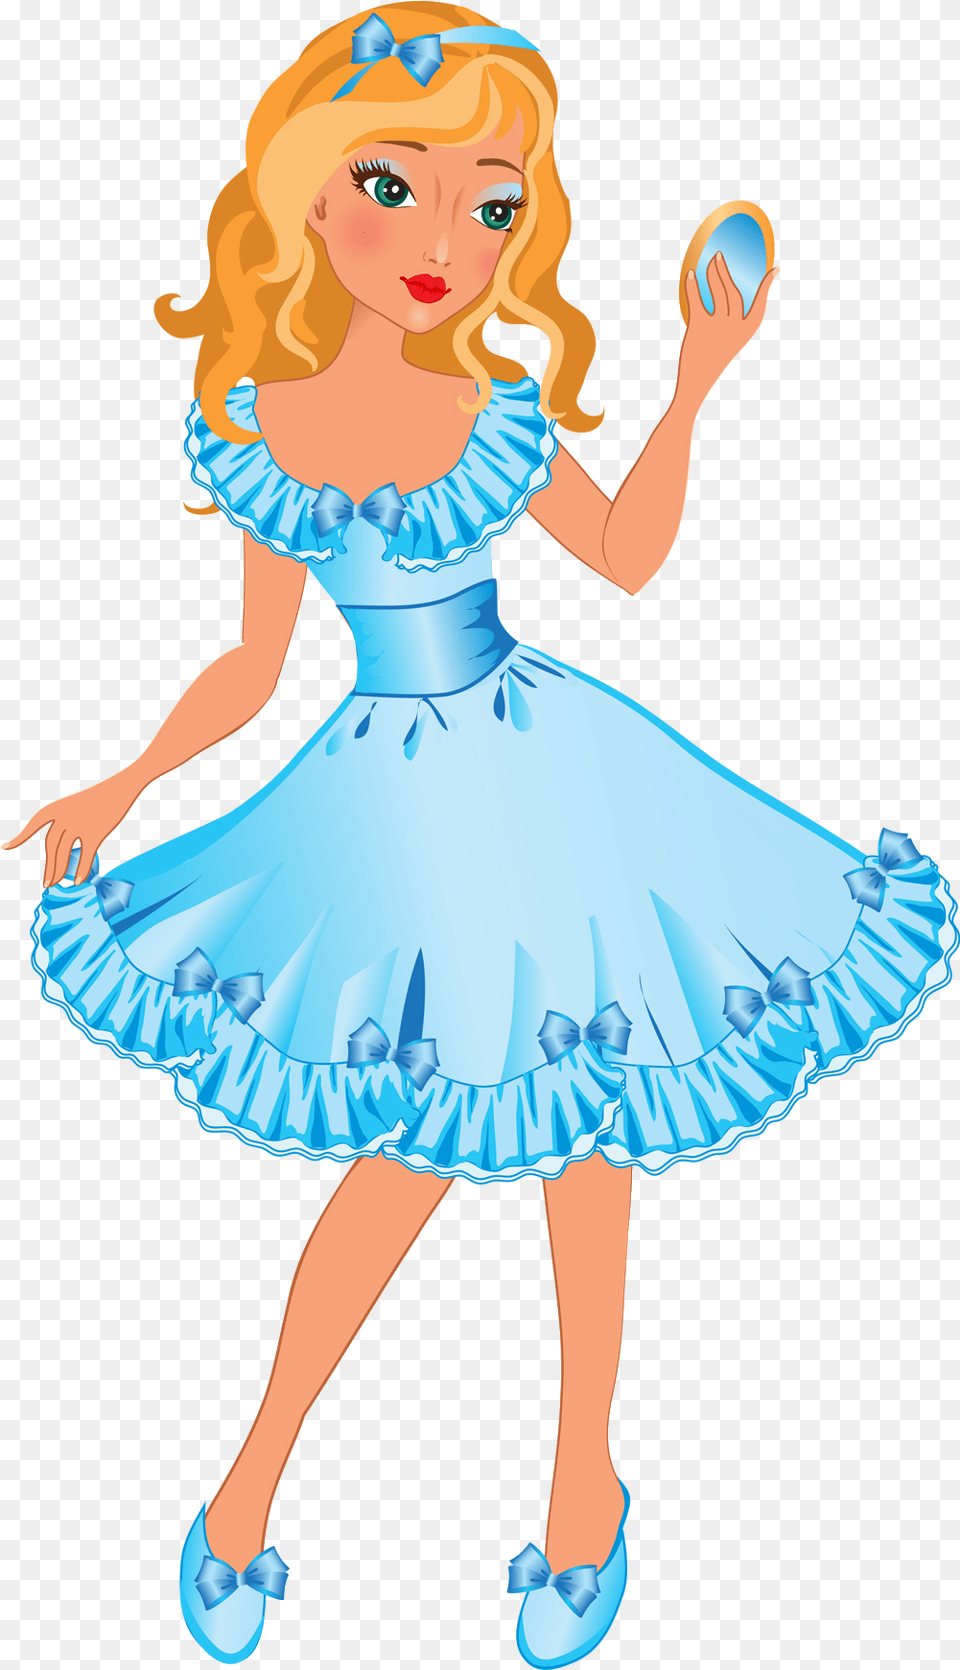 Disney Princess Cartoon Clip Art Princess Cartoon, Person, Dancing, Leisure Activities, Child Free Transparent Png